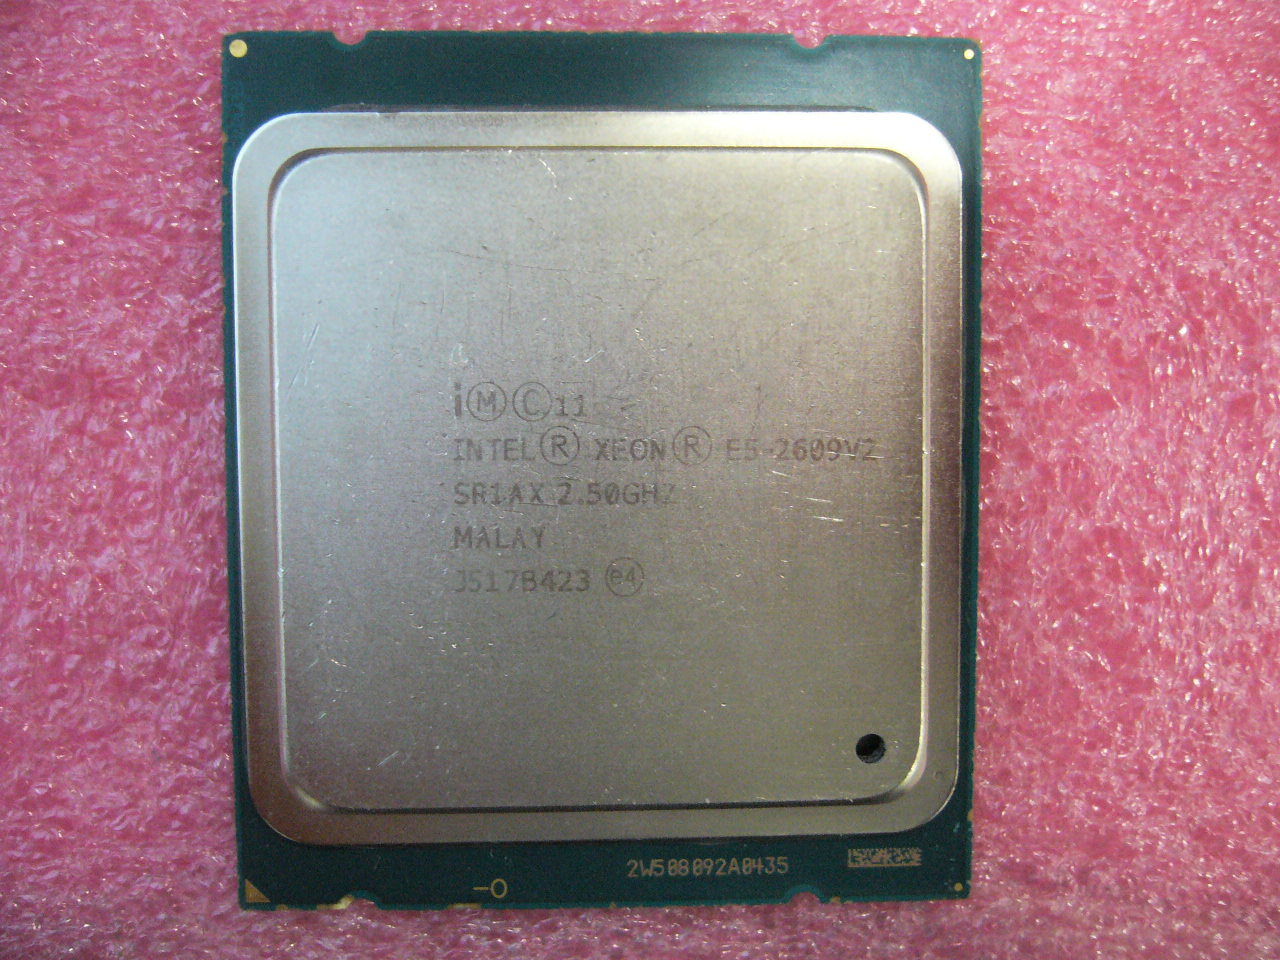 QTY 1x Intel CPU E5-2609 V2 Xeon CPU 4-Cores 2.5Ghz LGA2011 SR1AX